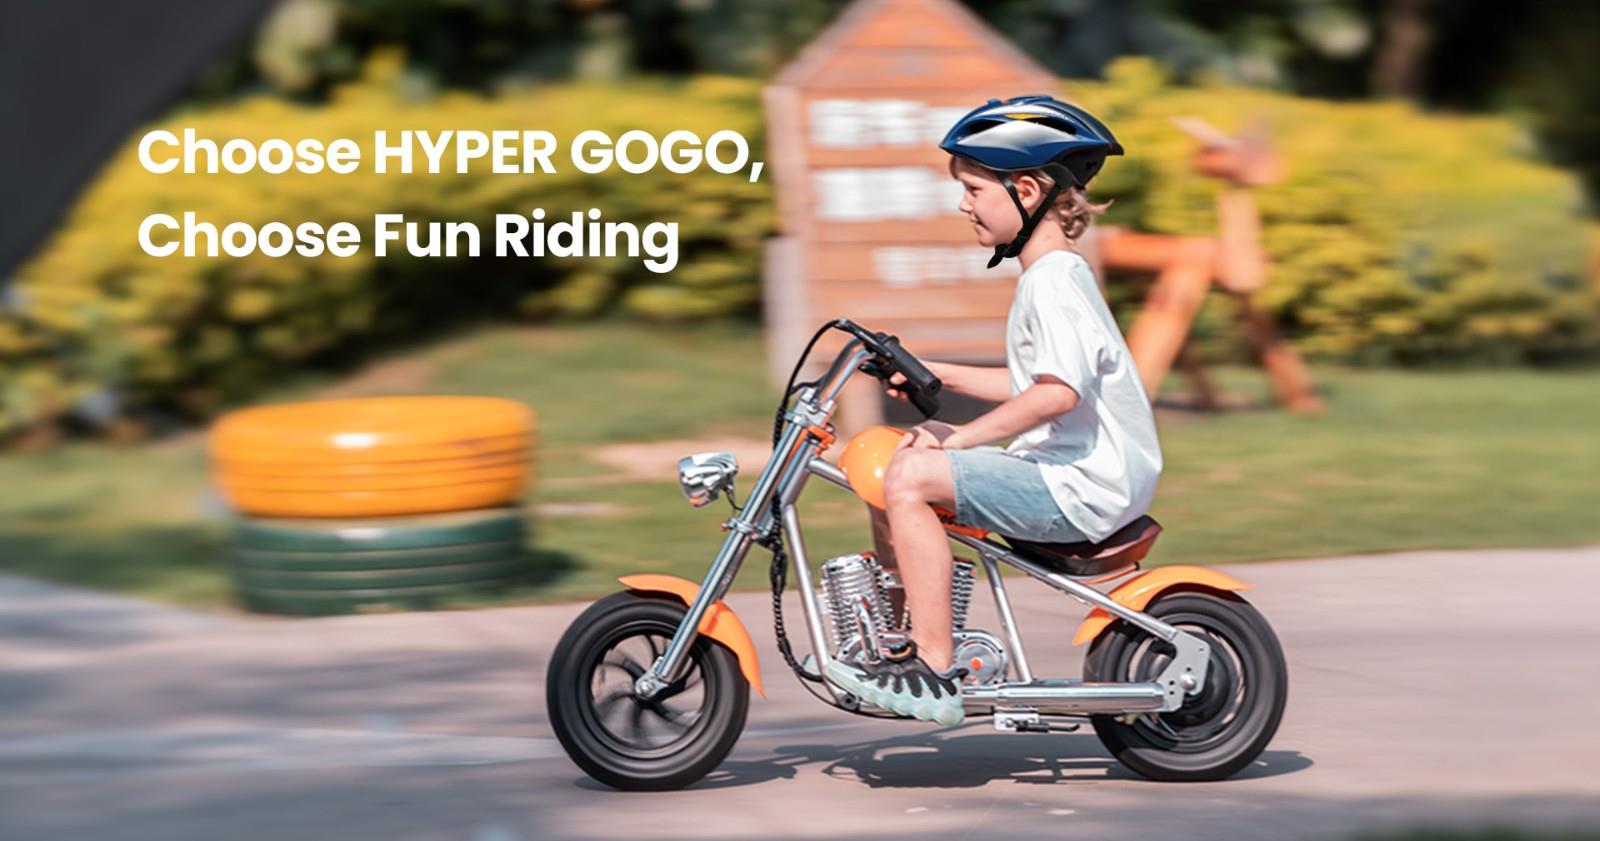 Hyper GOGO Challenger 12 Plus Elektrische Motorfiets met App voor kinderen, 12 x 3 Banden, 160W, 5.2Ah - Groen